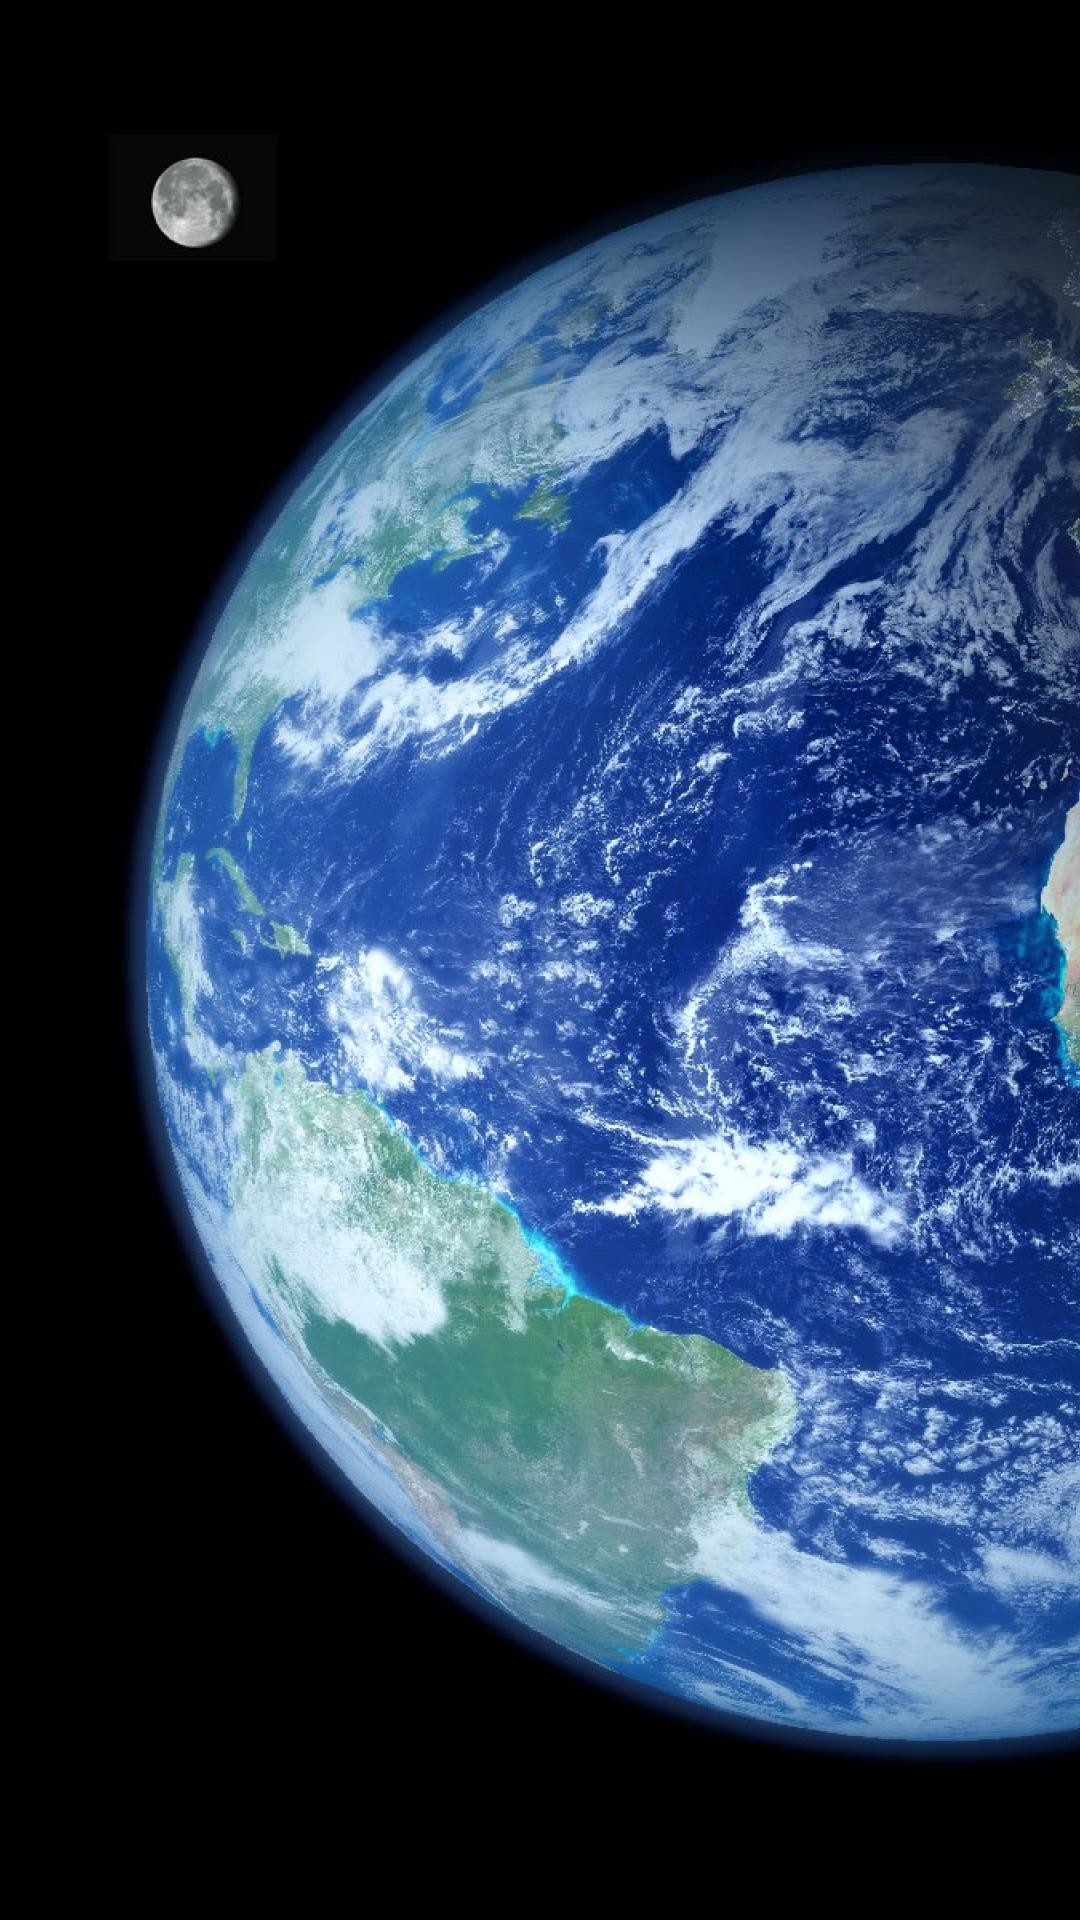 fond d'écran iphone terre,terre,planète,atmosphère,objet astronomique,monde